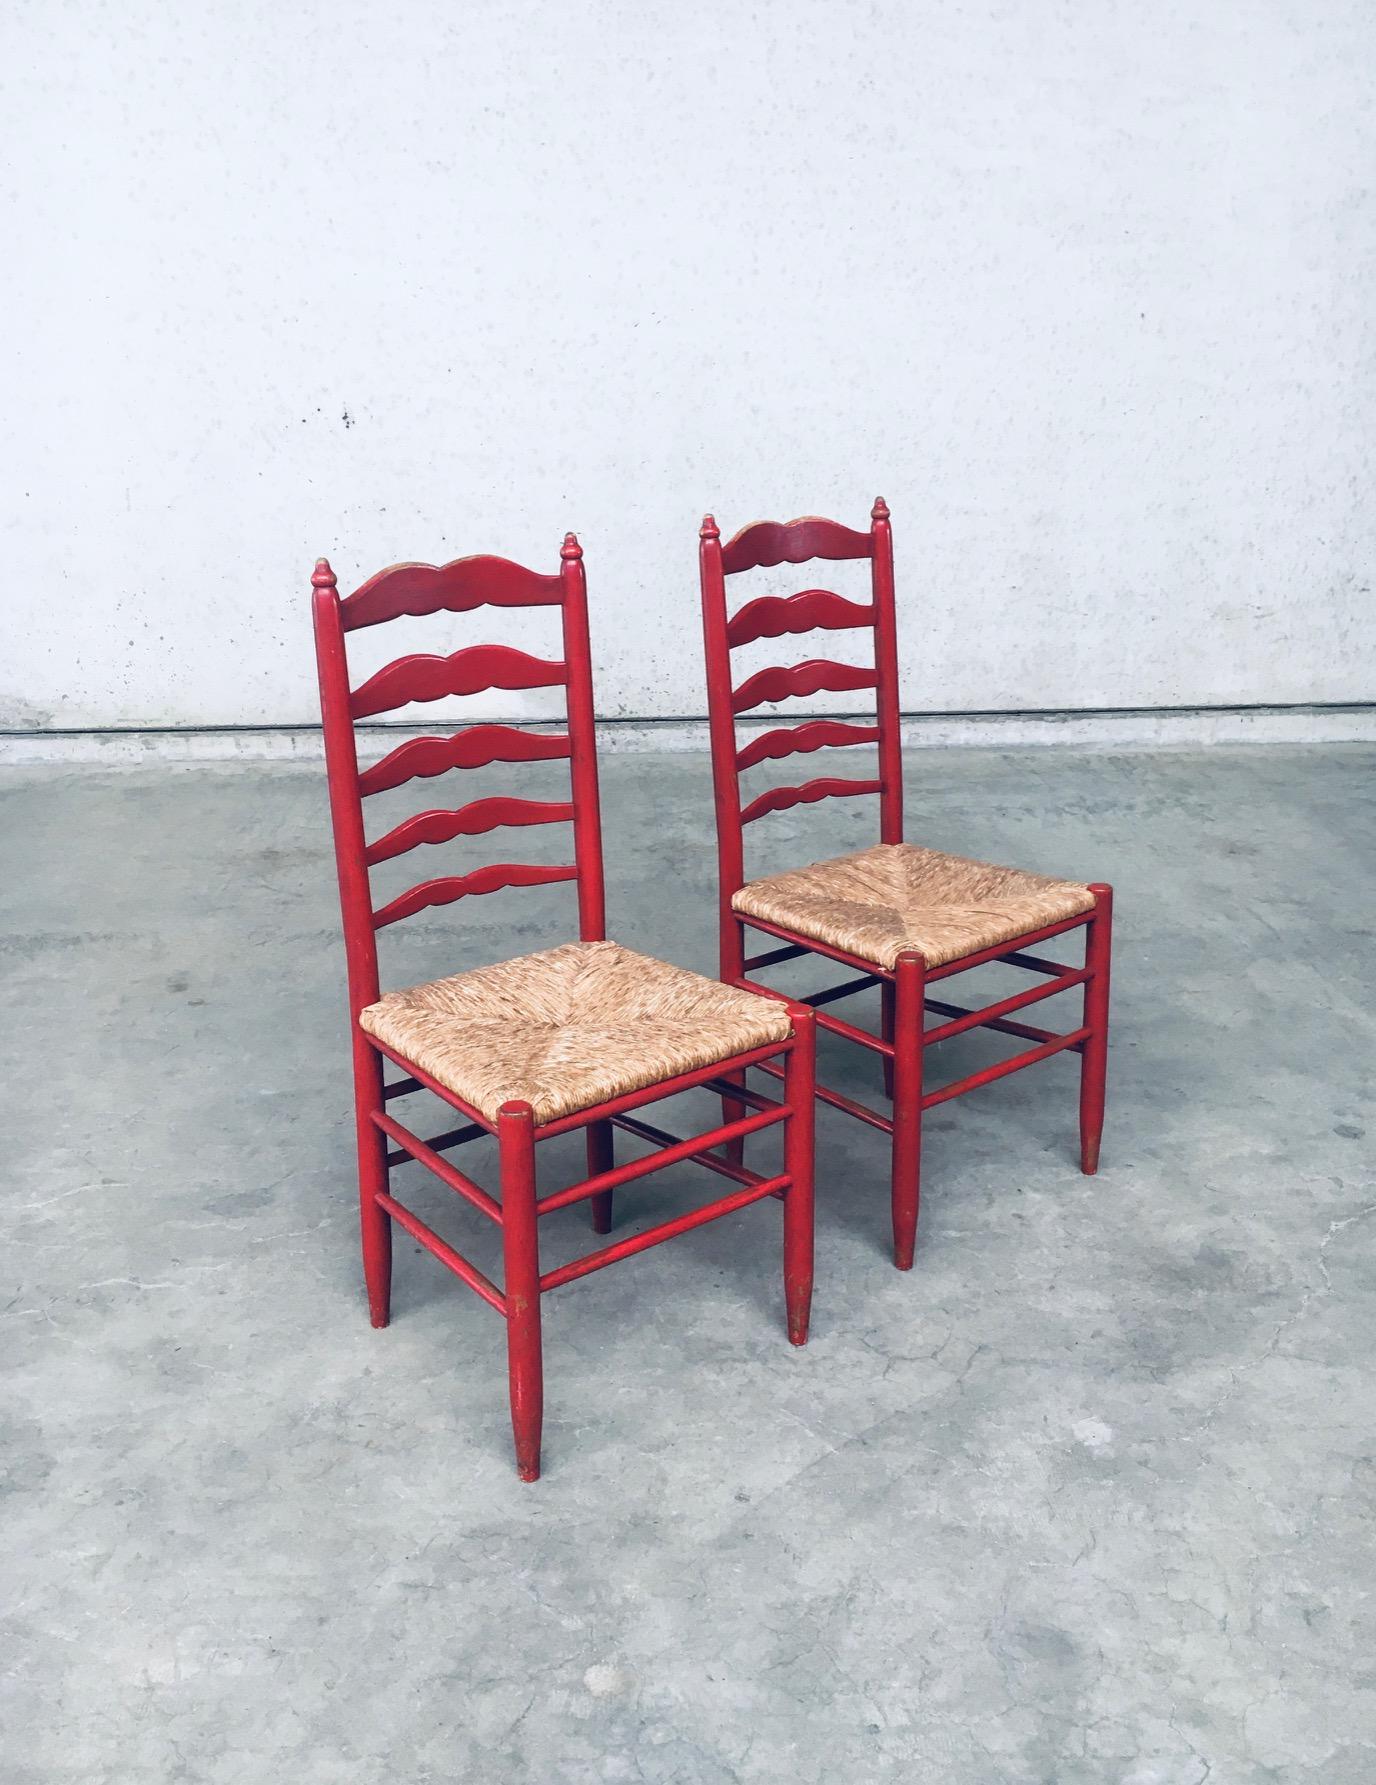 Vintage Rustic High Ladder Back Red Lacquered Wood & Rush Chair set. Hergestellt in Frankreich, 1930er Jahre. Klassische Stühle mit hoher Leiterlehne und schnurrbartförmigen Spindeln an der hohen Rückenlehne. Rot lackierter Holzrahmen mit vielen